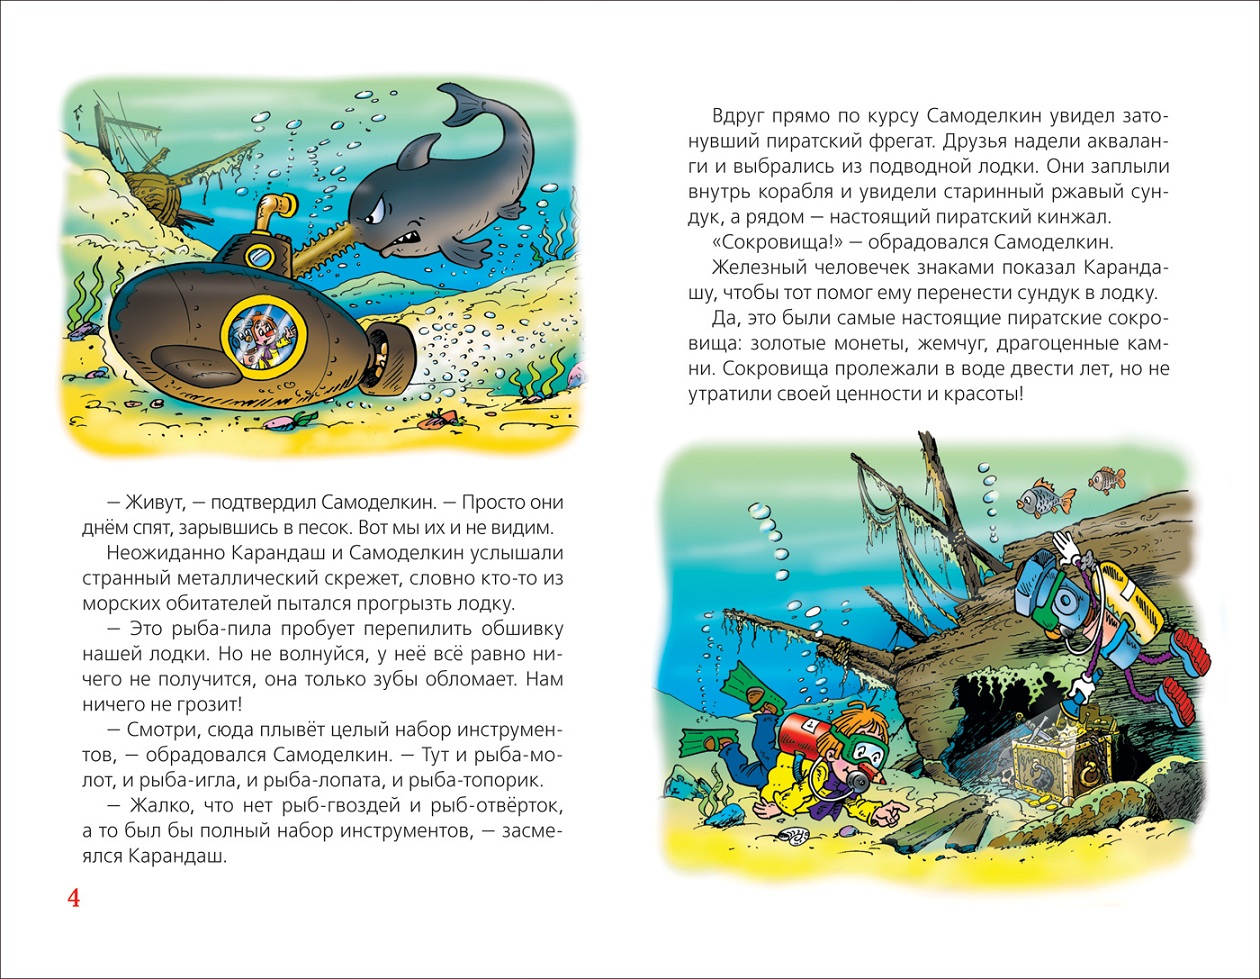 Книга из серии Детская библиотека Росмэн - Сказки про Карандаша и Самоделкина  